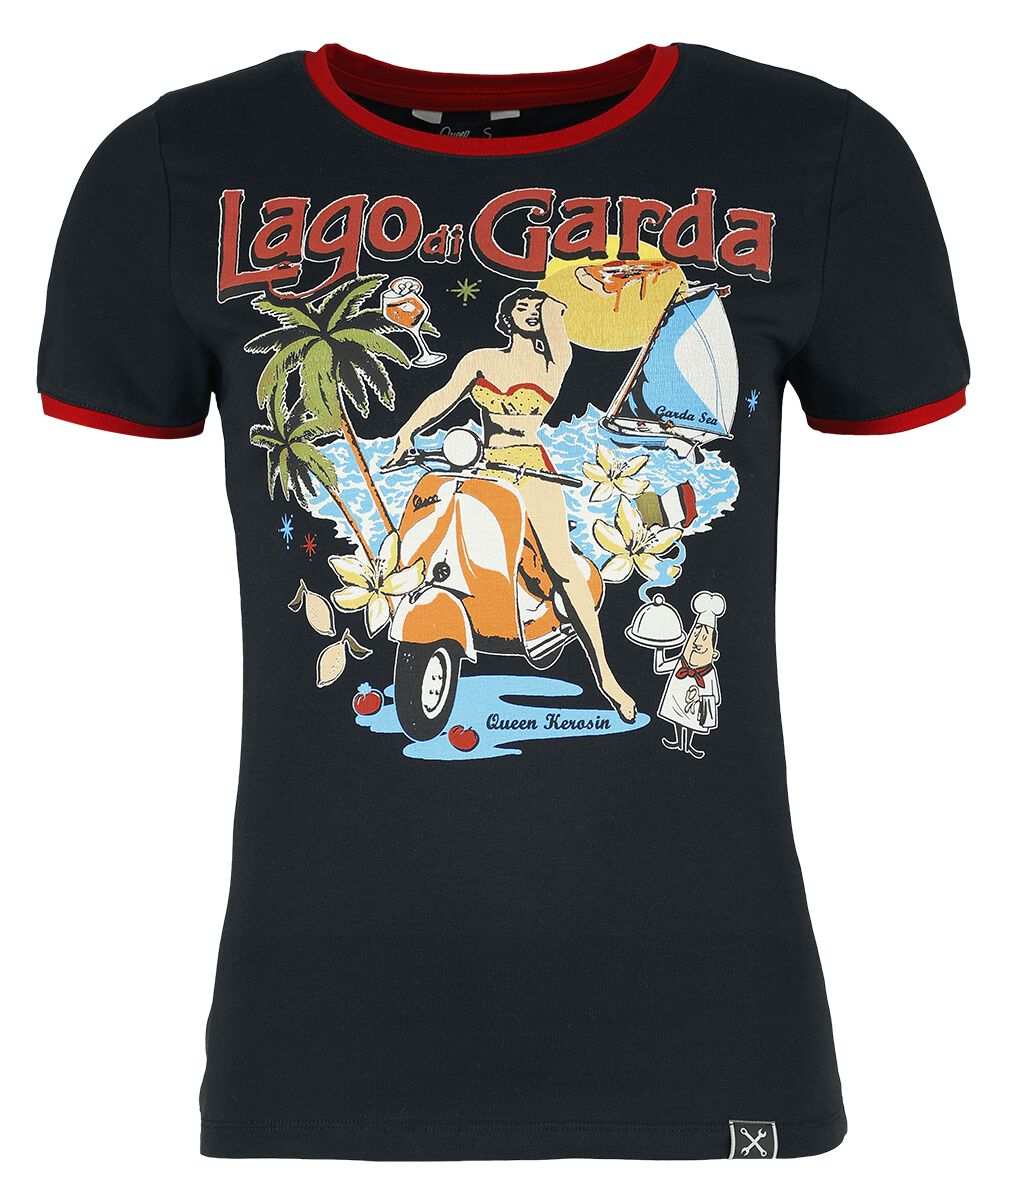 Queen Kerosin - Rockabilly T-Shirt - Lago Di Garda - XS bis 4XL - für Damen - Größe 3XL - schwarz/rot